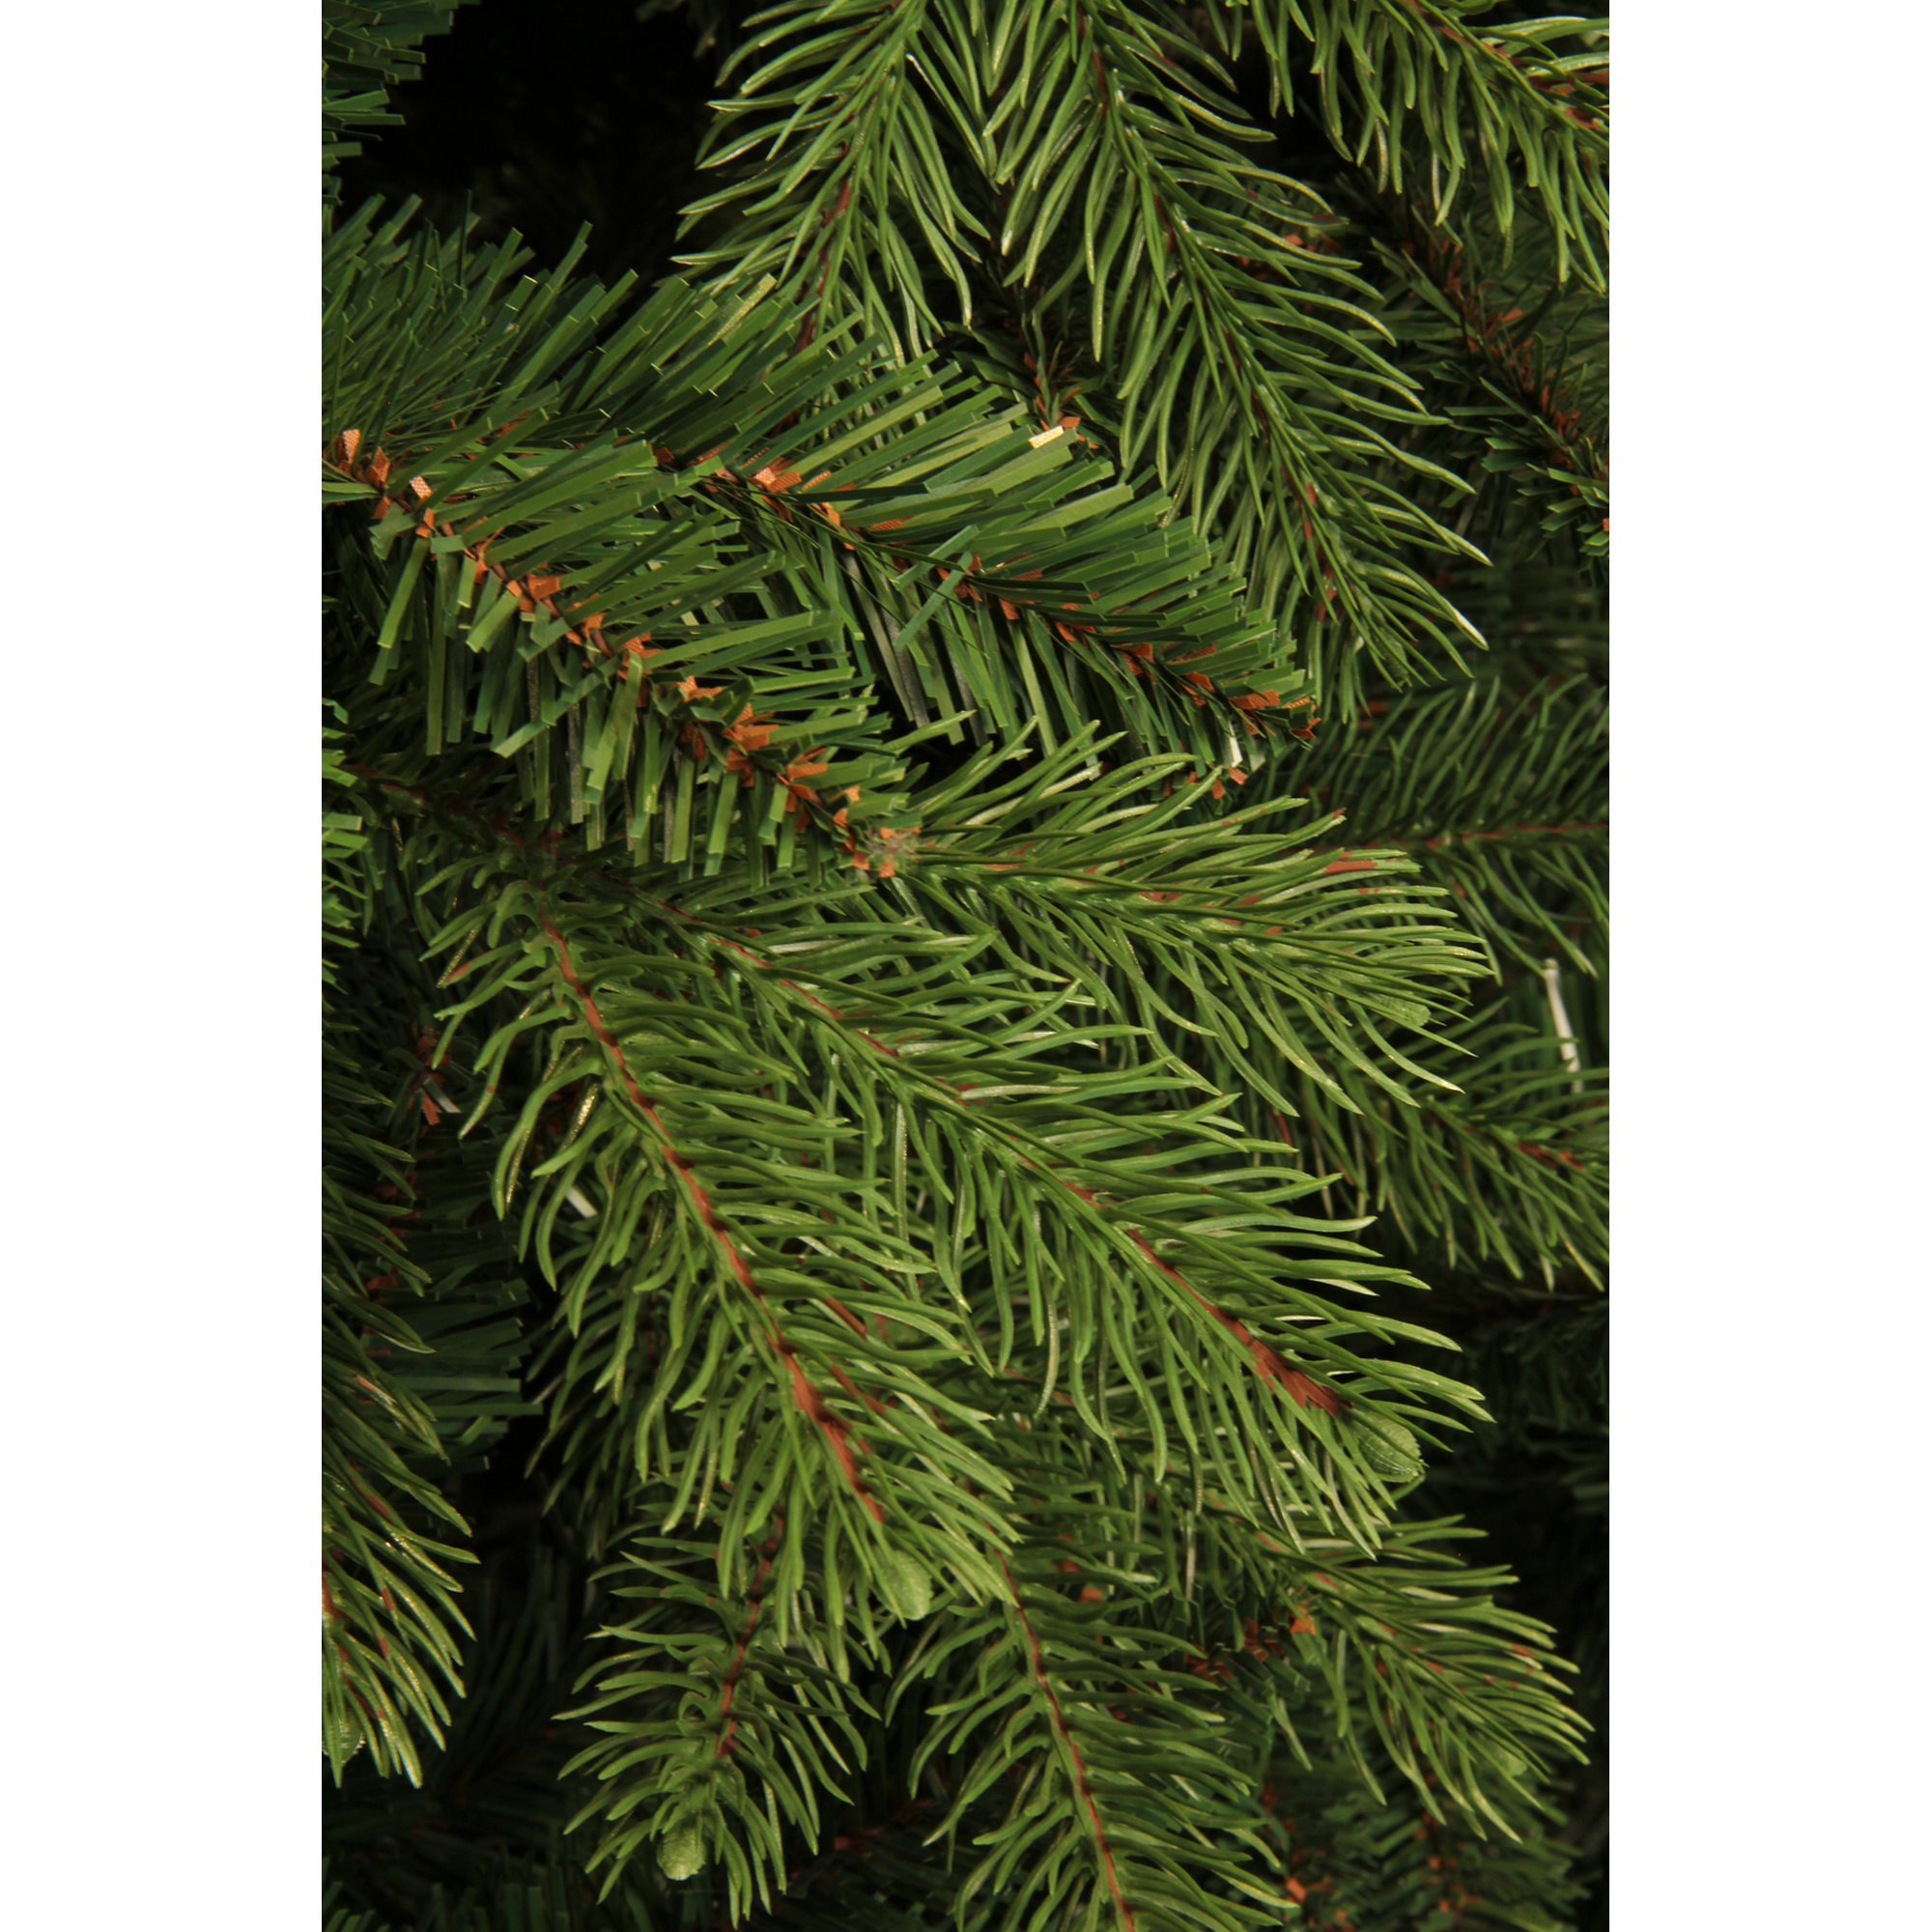 Künstlicher Weihnachtsbaum 'Pittsburgh' grün/frosted 185 cm + product picture